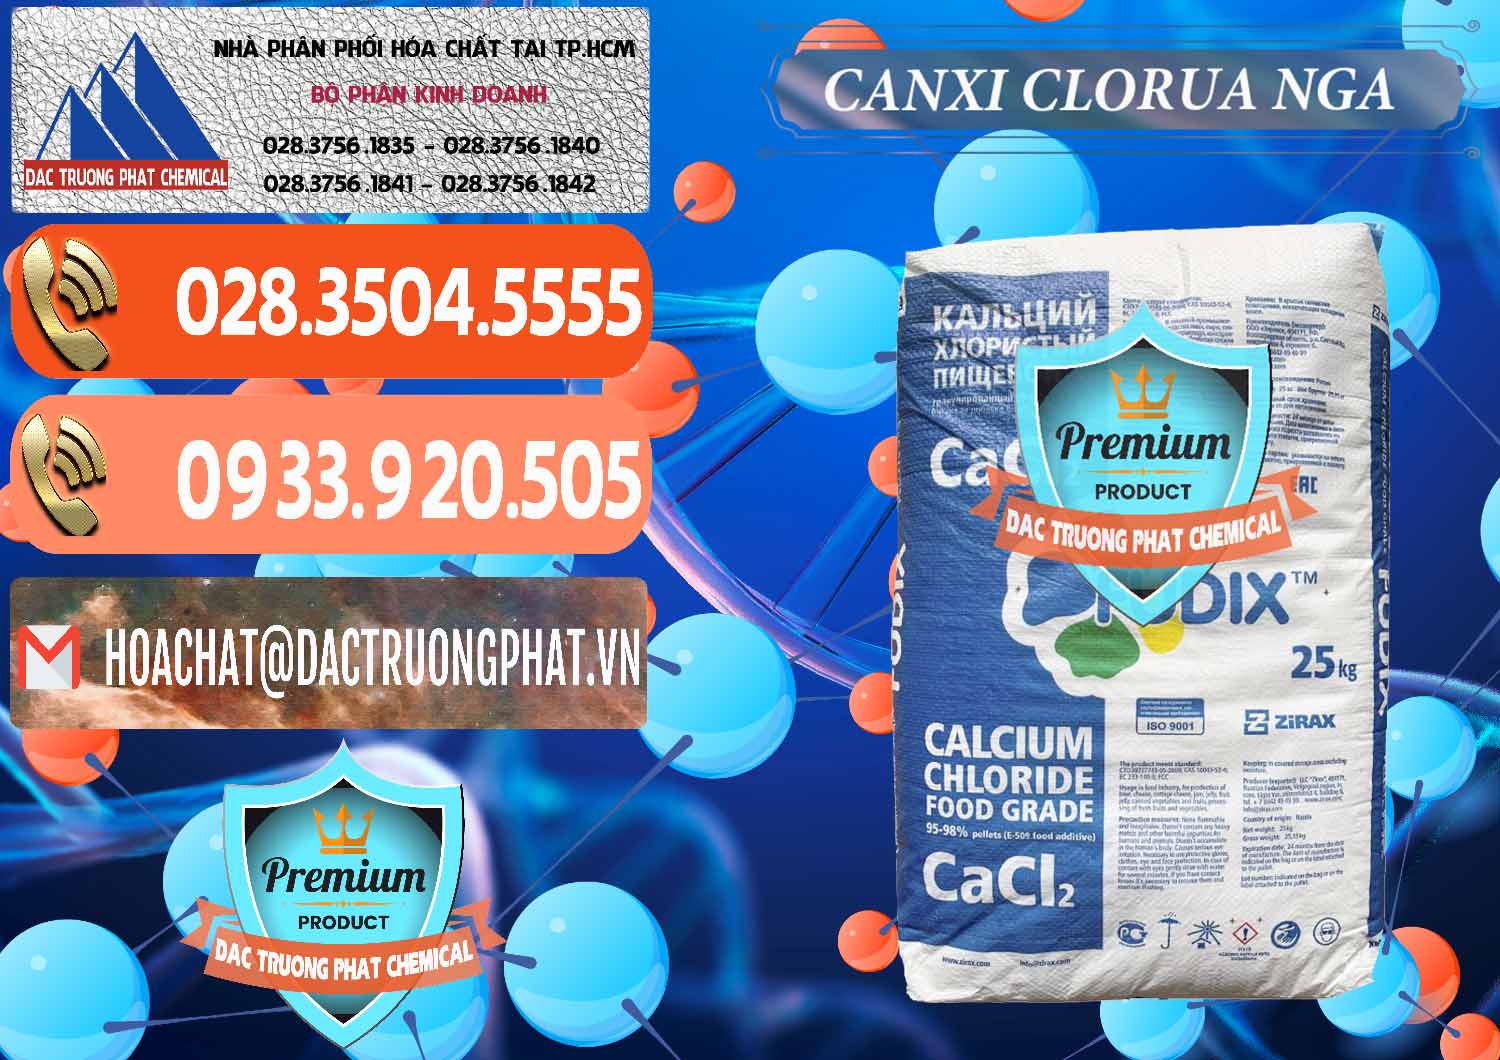 Đơn vị phân phối và bán CaCl2 – Canxi Clorua Nga Russia - 0430 - Chuyên cung cấp ( nhập khẩu ) hóa chất tại TP.HCM - hoachatmientay.com